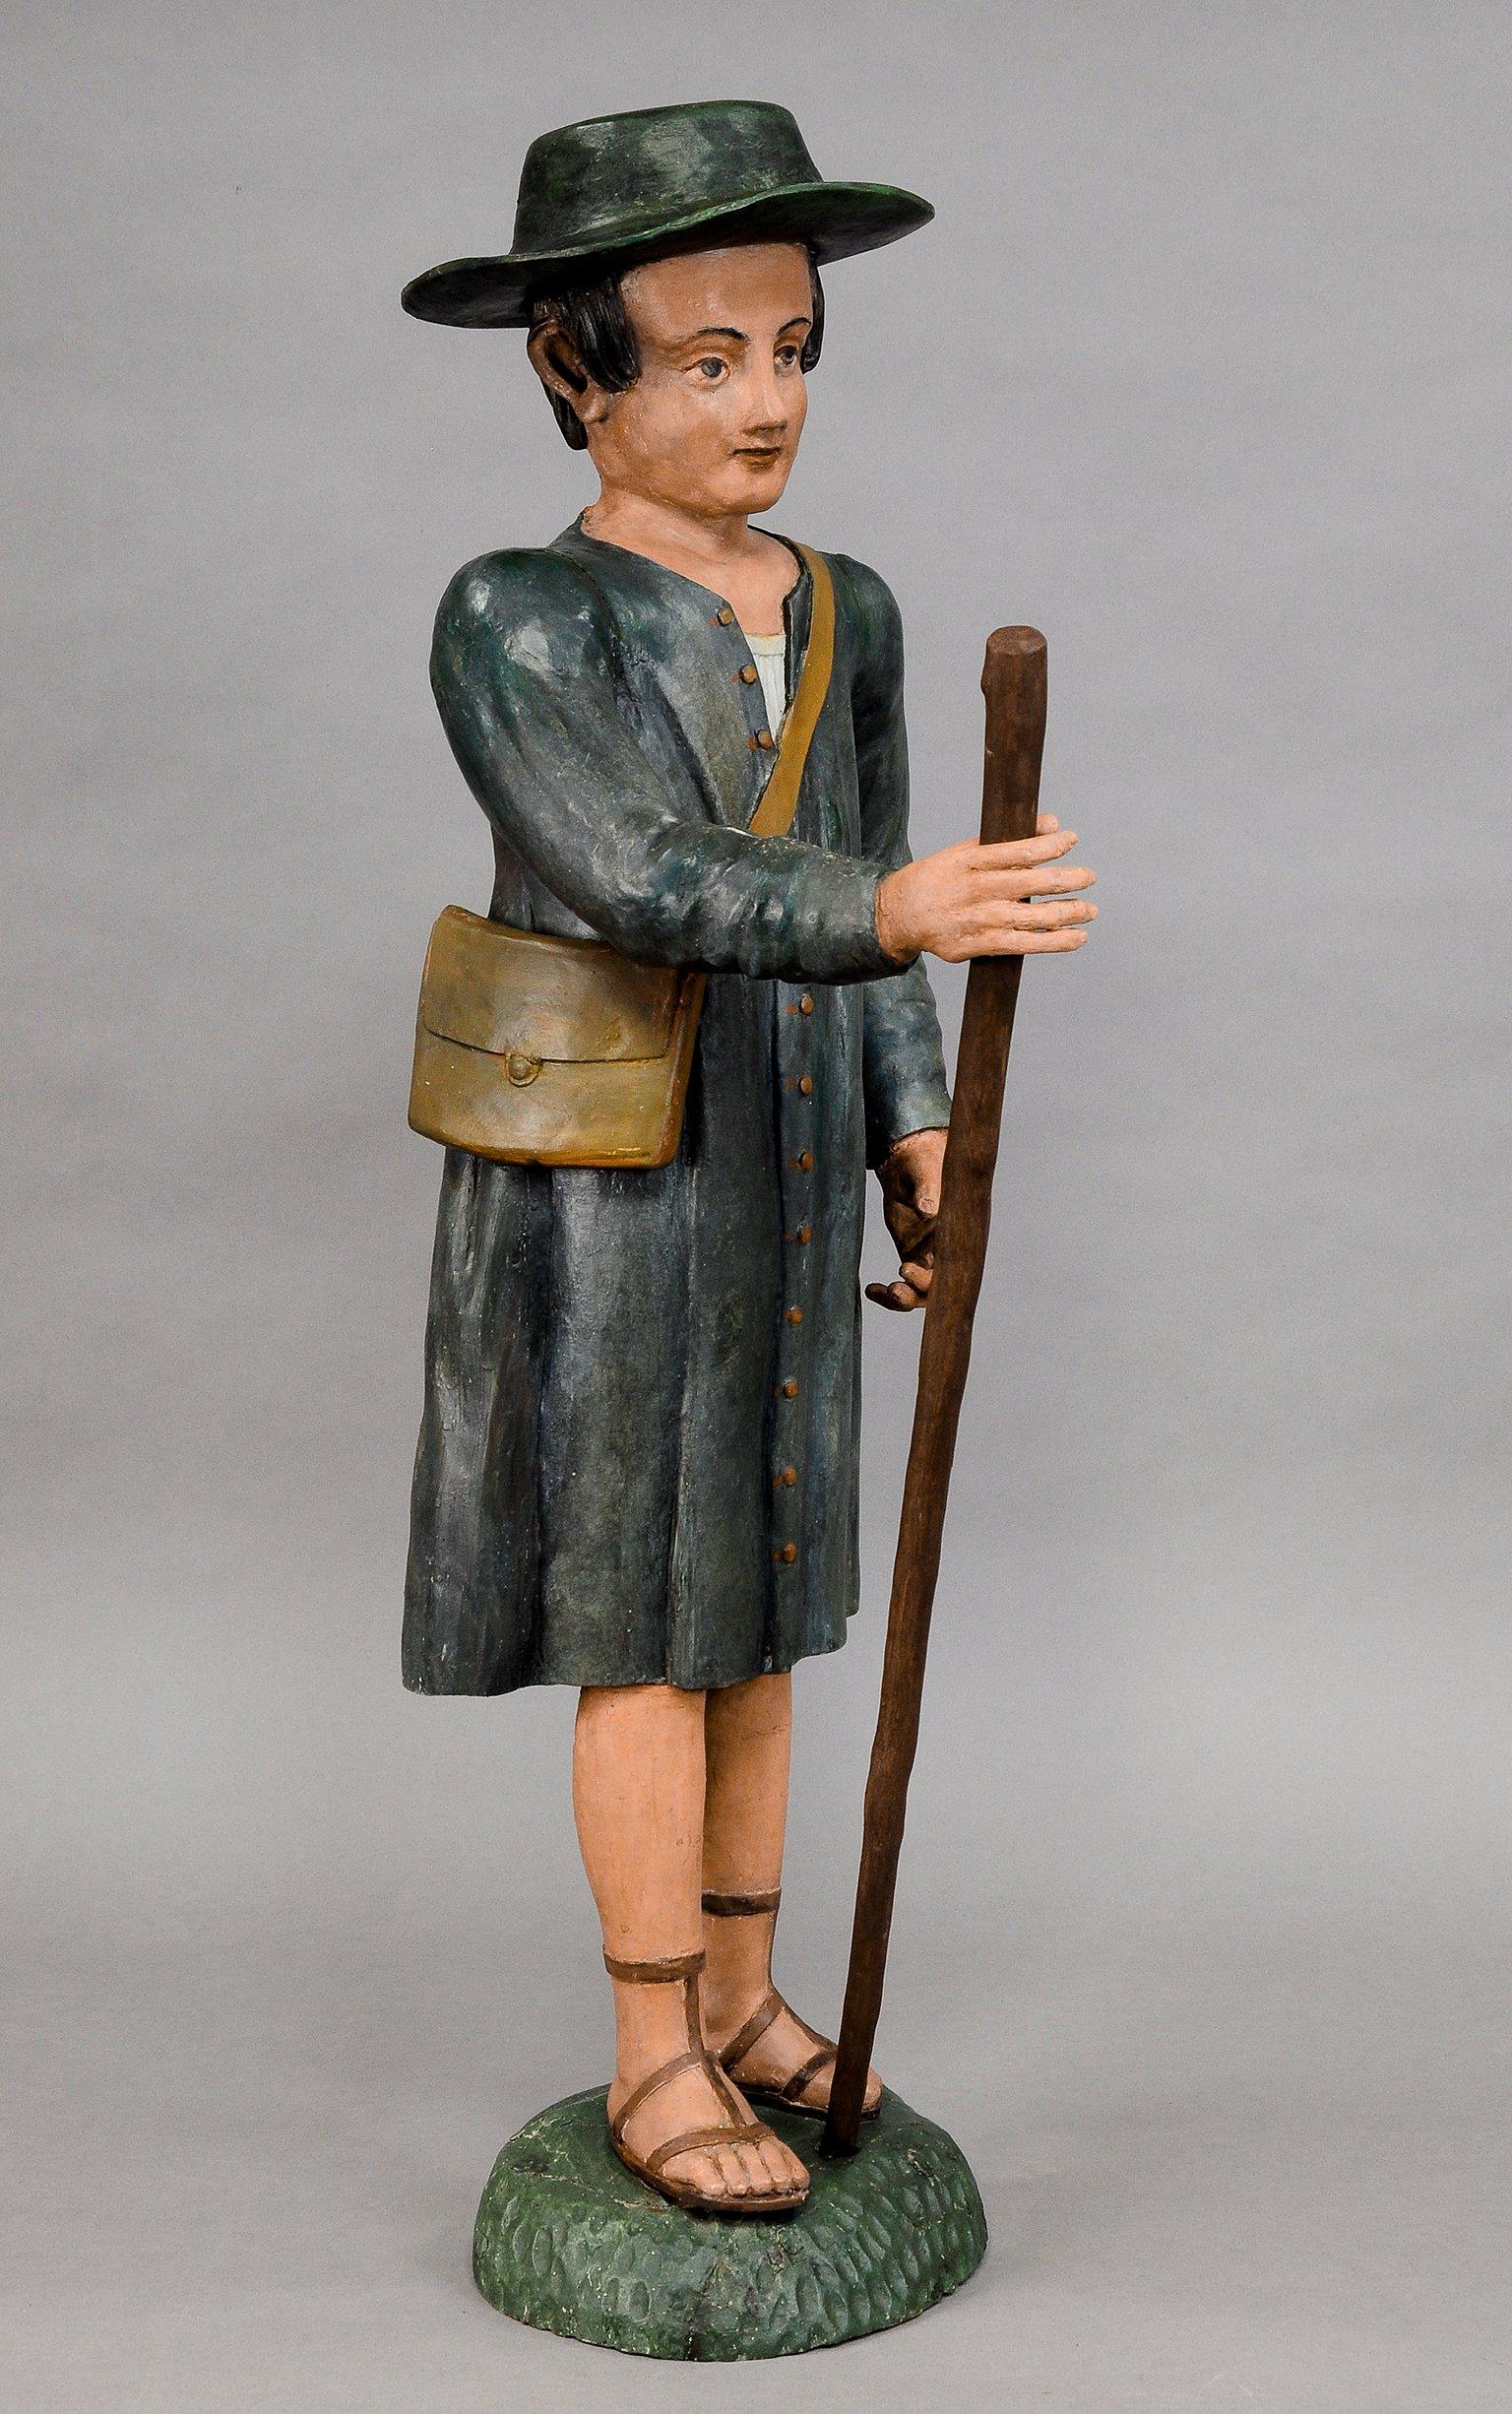 Figurine de berceau en bois sculpté d'antiquités d'un berger

Grande statue antique en bois sculpté représentant un berger, provenant probablement d'une crèche de Noël. Sculpté à la main en Allemagne dans la seconde moitié du XIXe siècle. Bois